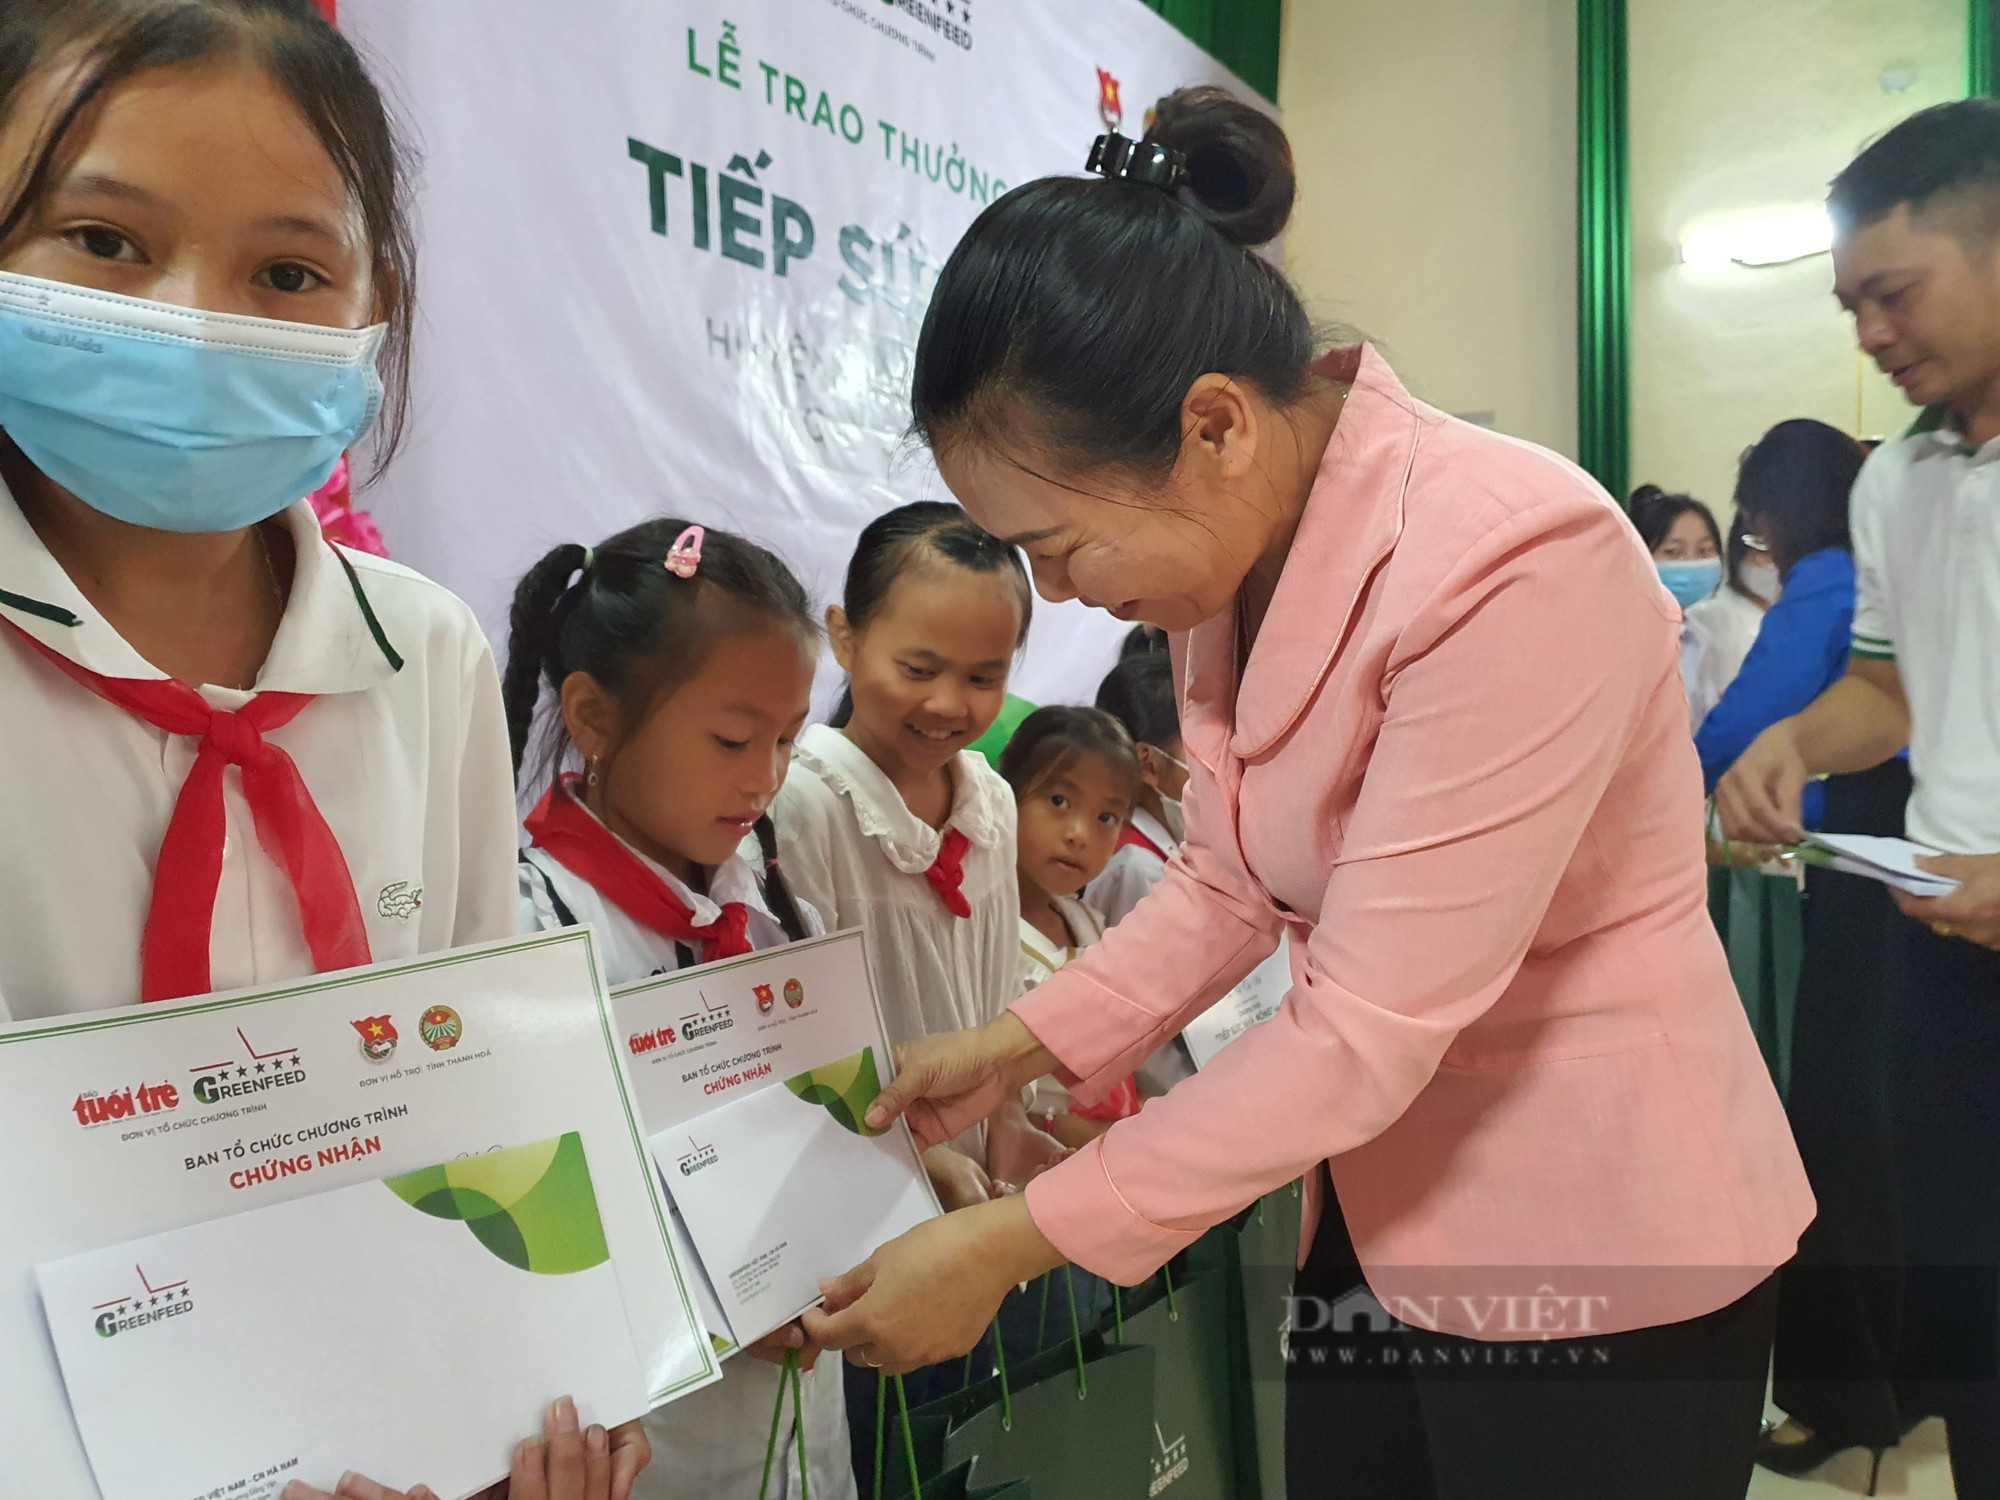 'Tiếp sức nhà nông' trao thưởng cho 32 học sinh khá, giỏi tỉnh Thanh Hóa - Ảnh 2.